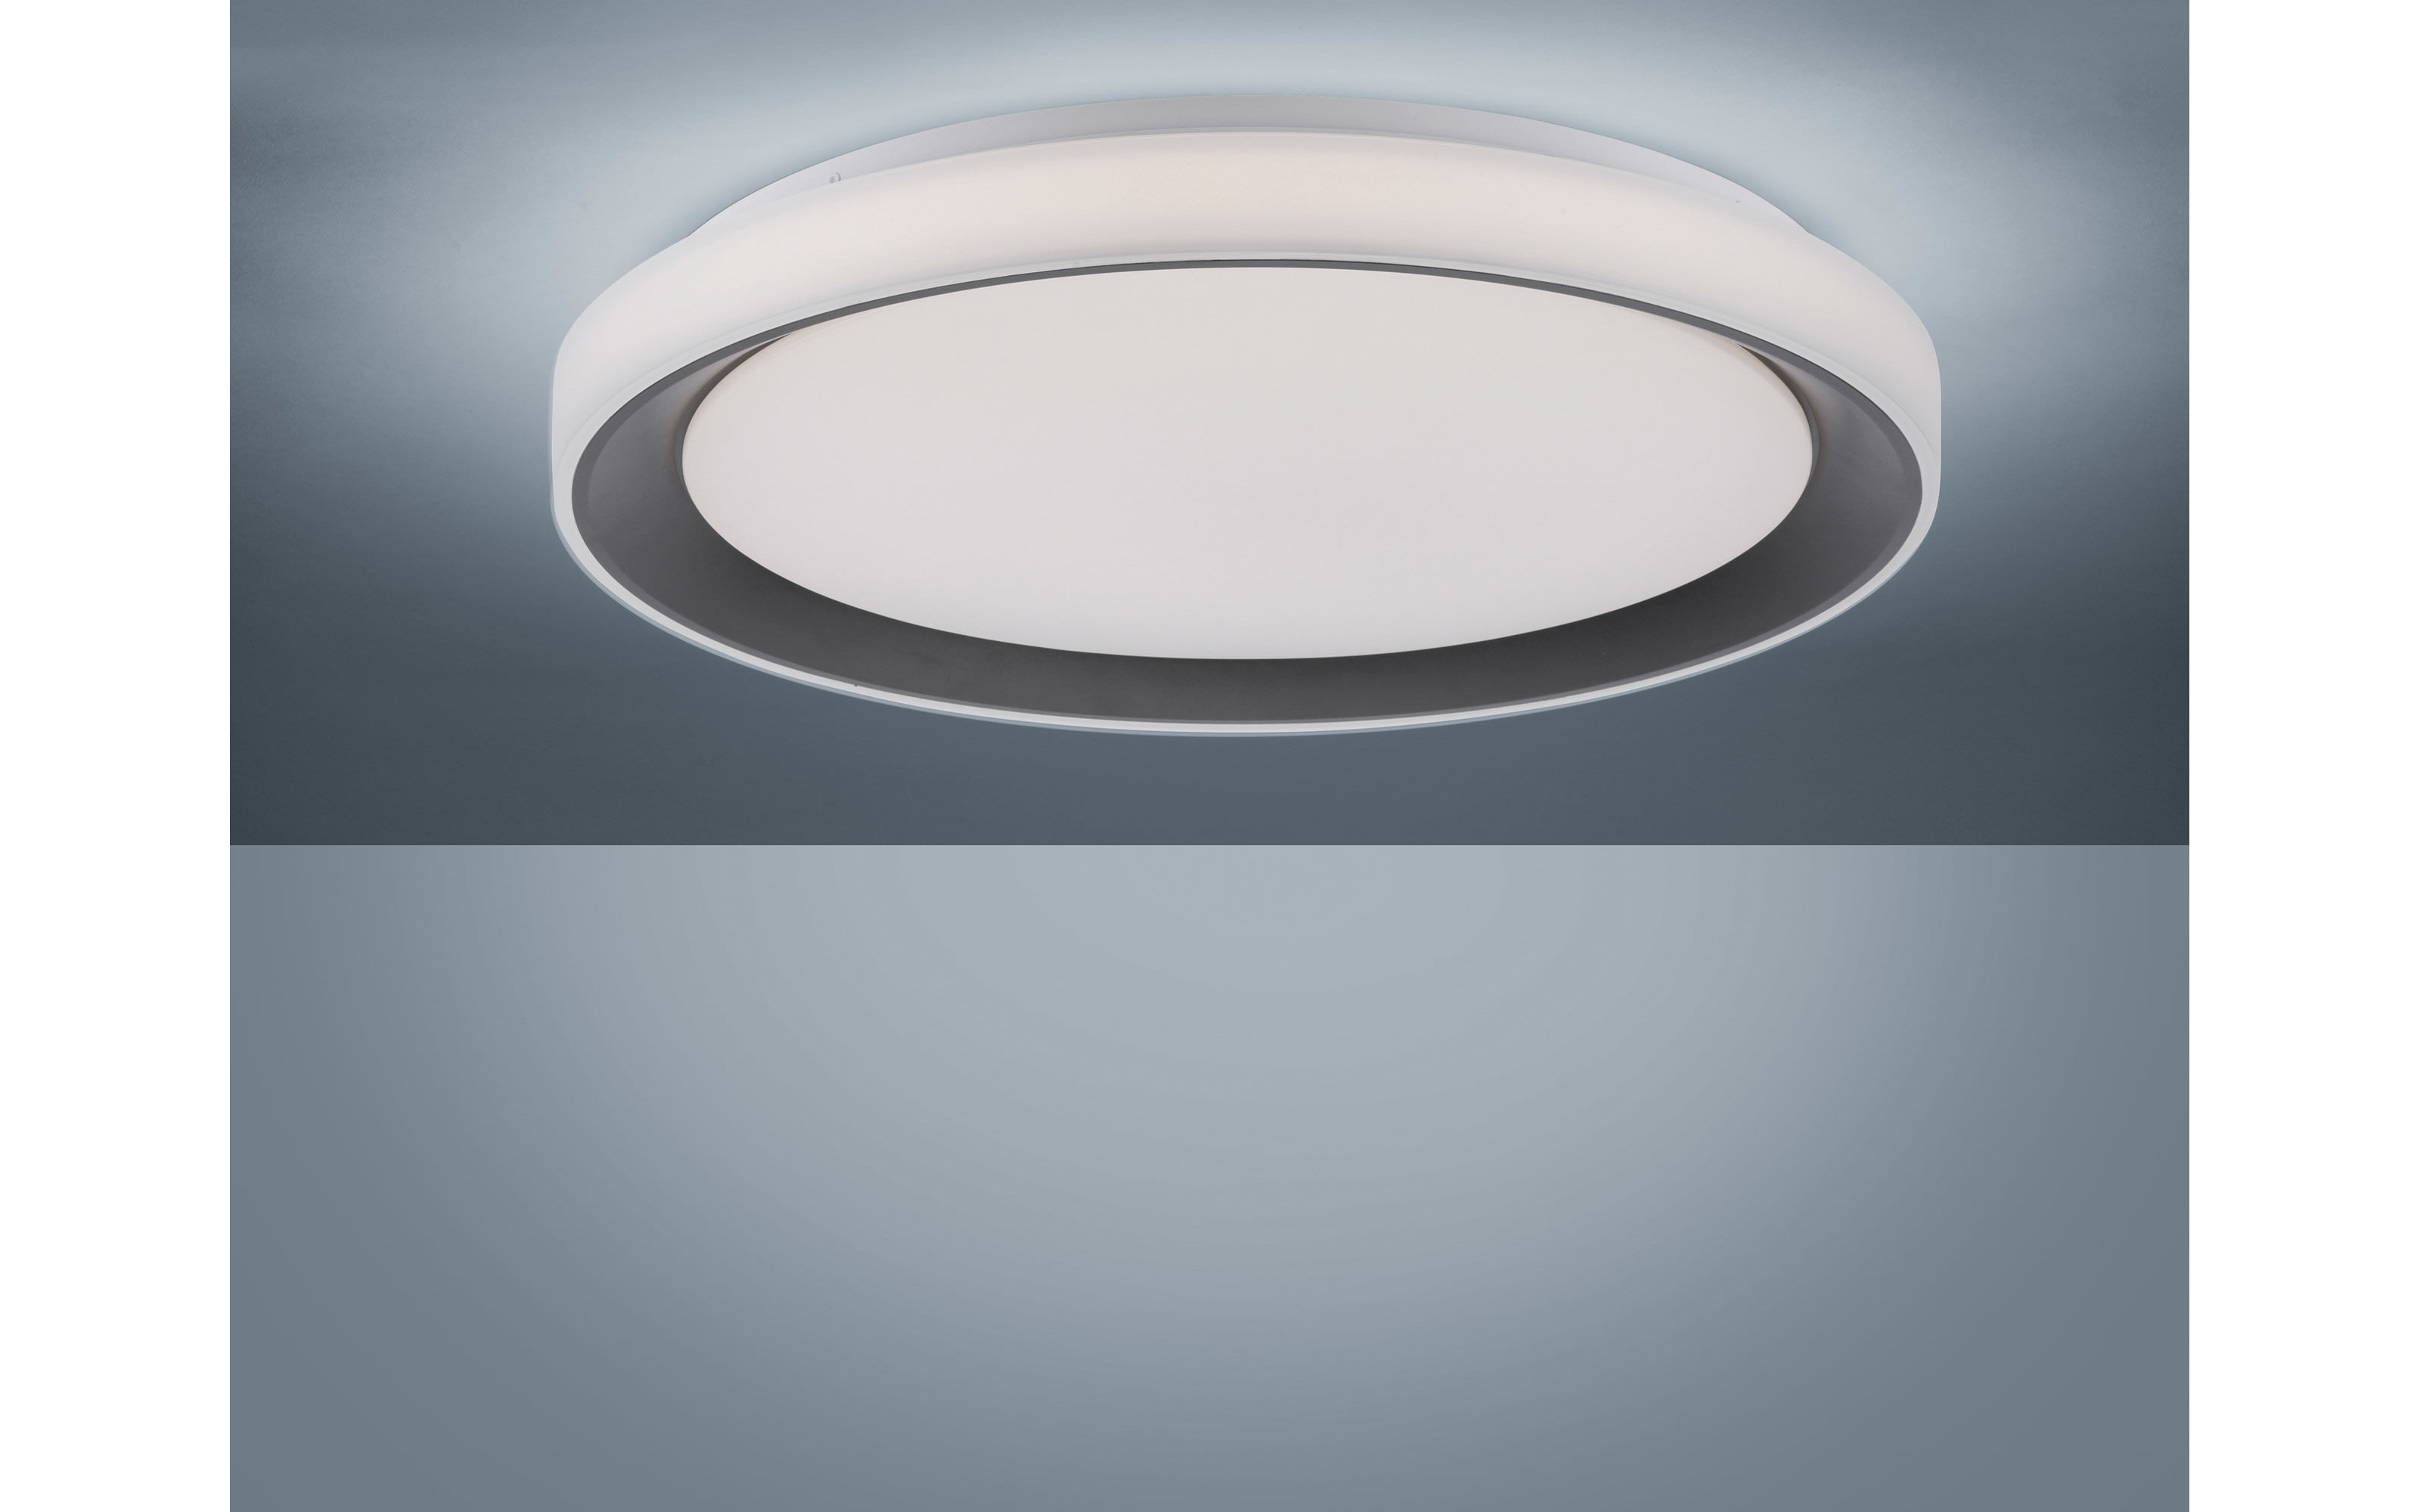 LED-Deckenleuchte Disc CCT RGB in schwarz/weiß, 51 cm